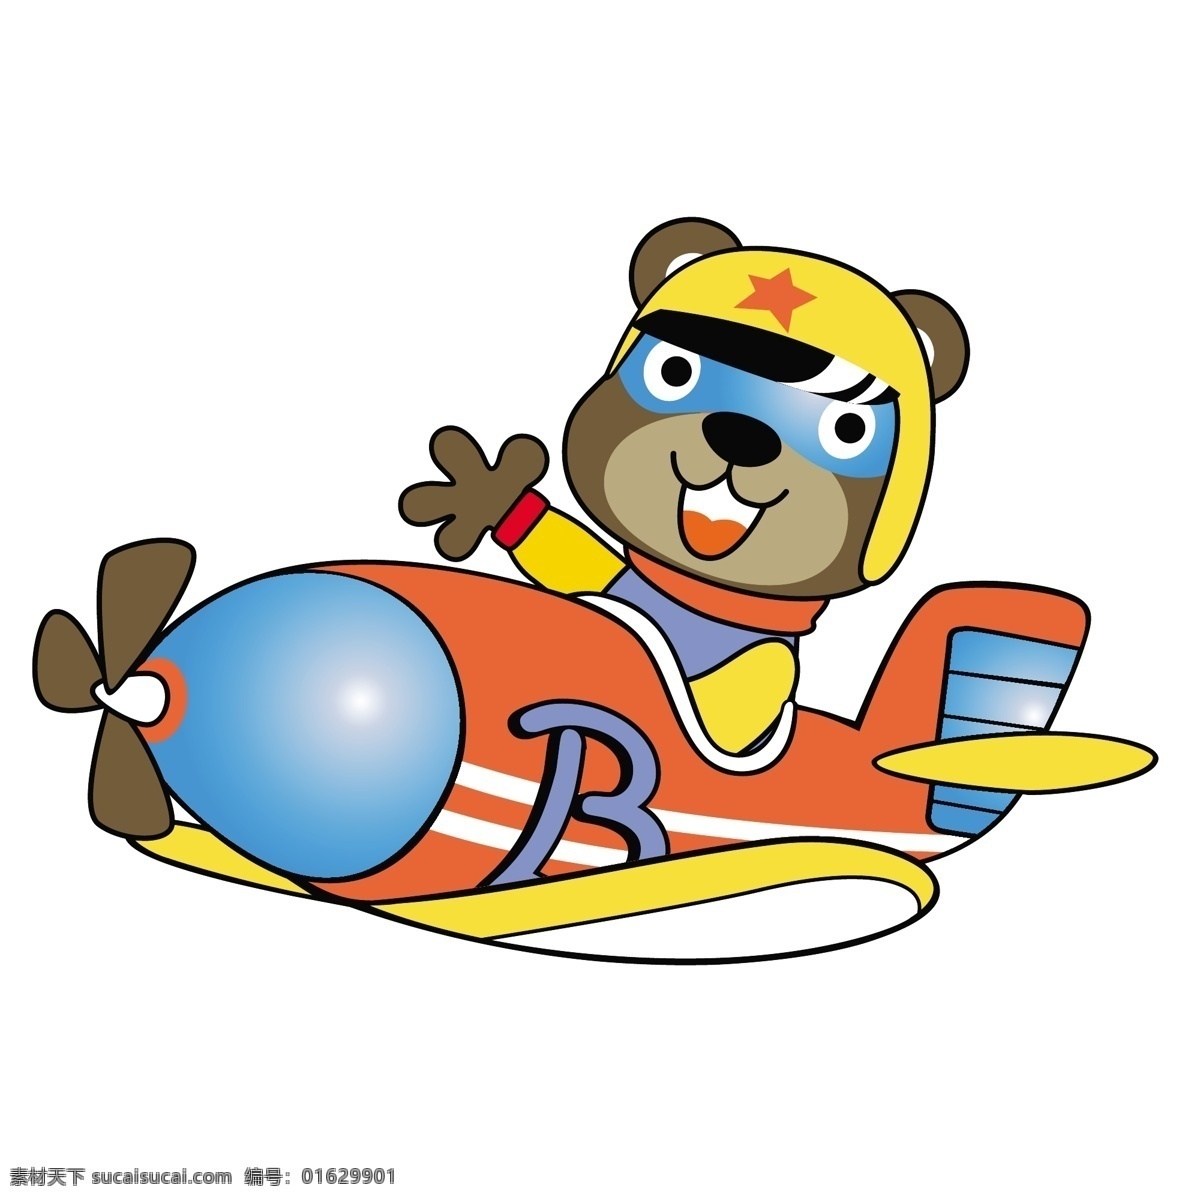 小 熊 开 直升机 可爱 卡通 小熊 小动物 卡通素材 儿童绘画 可爱卡通